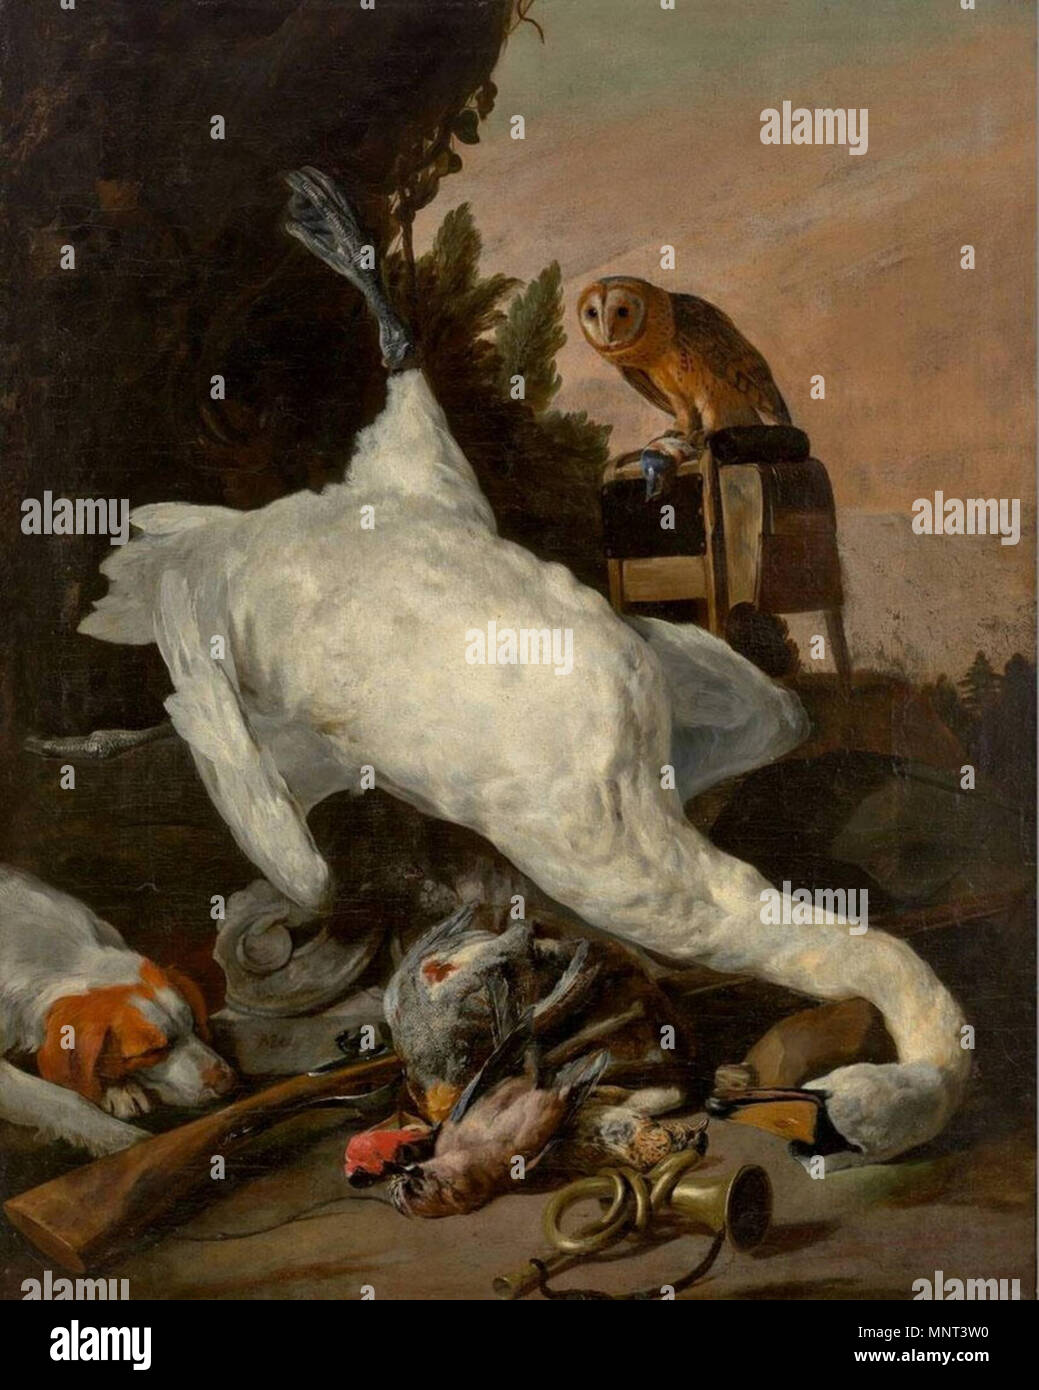 La vie de bas de chasse avec un cygne . La vie encore. Entre 1640 et 1660. 971 Peeter Boel - Chasse Nature morte avec un cygne Banque D'Images